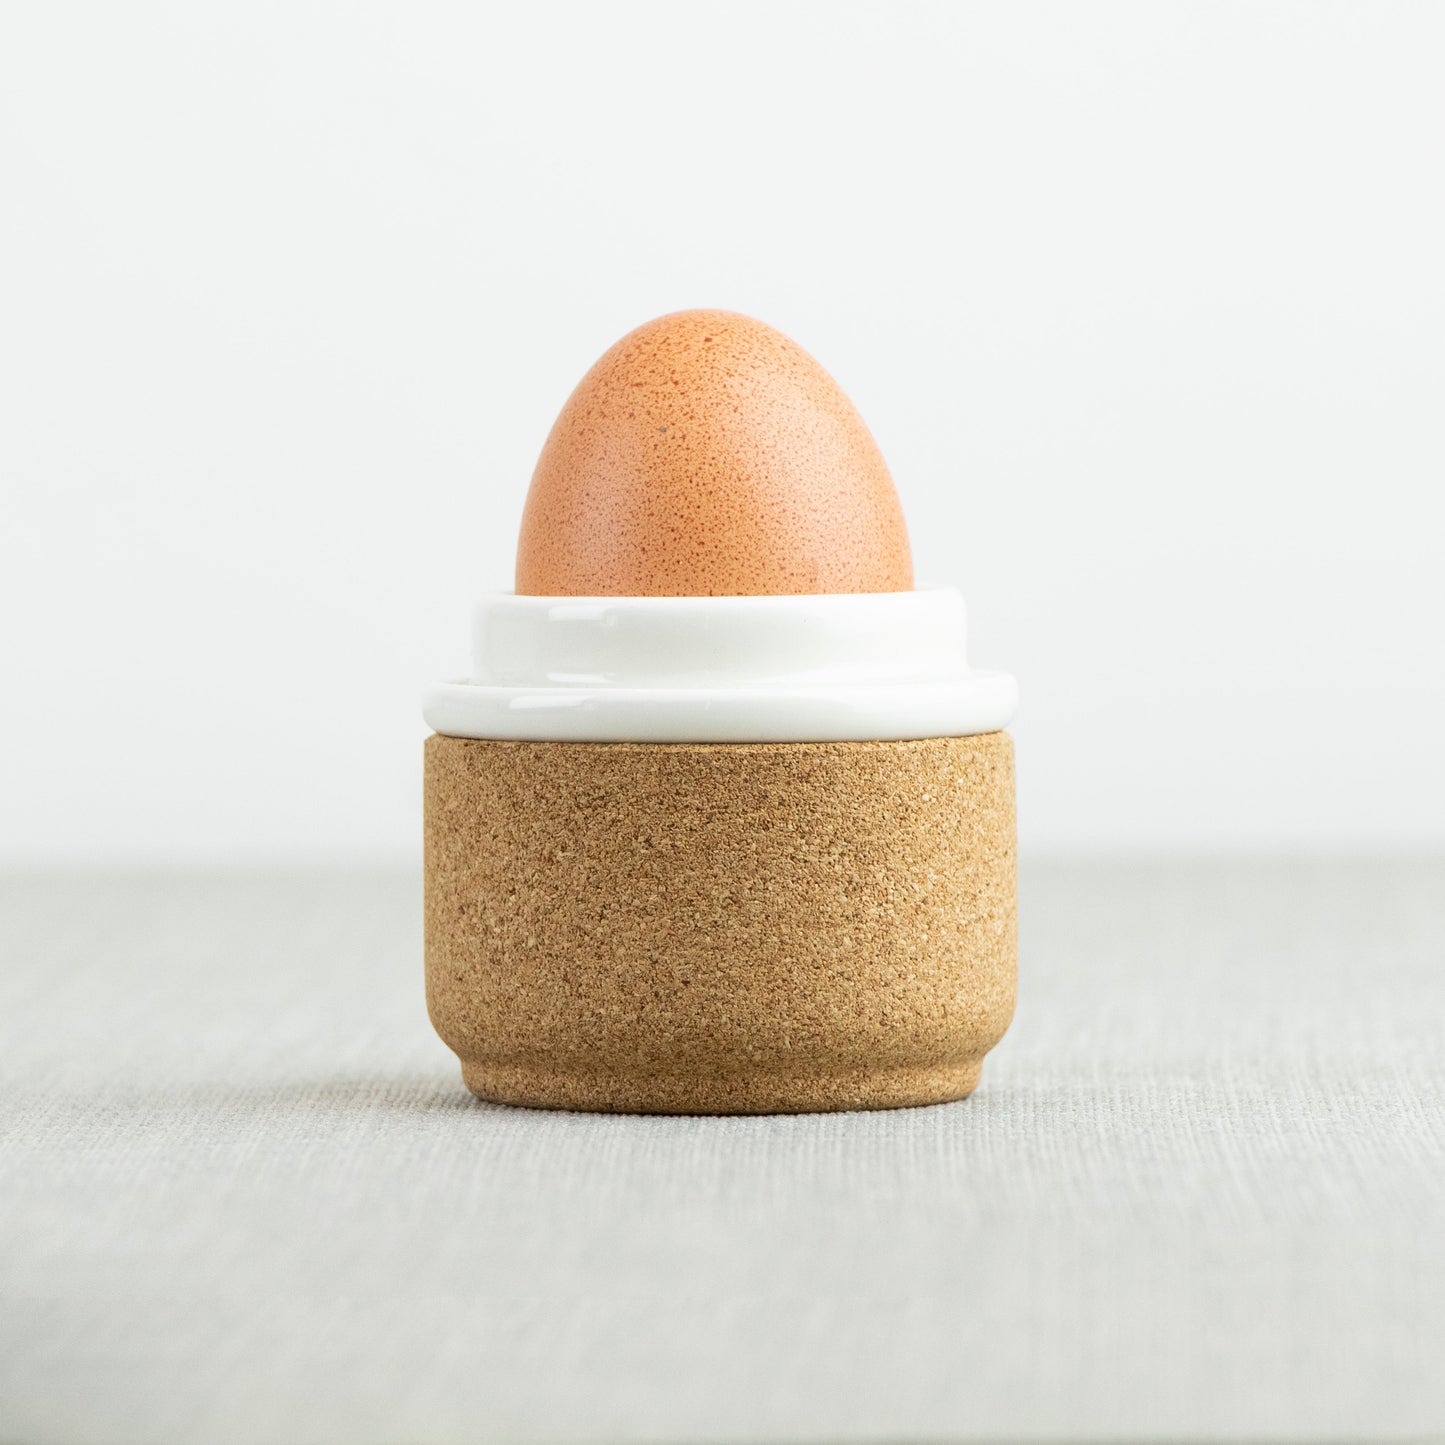 LIGA eco living egg cup in cream ceramic and insulating cork